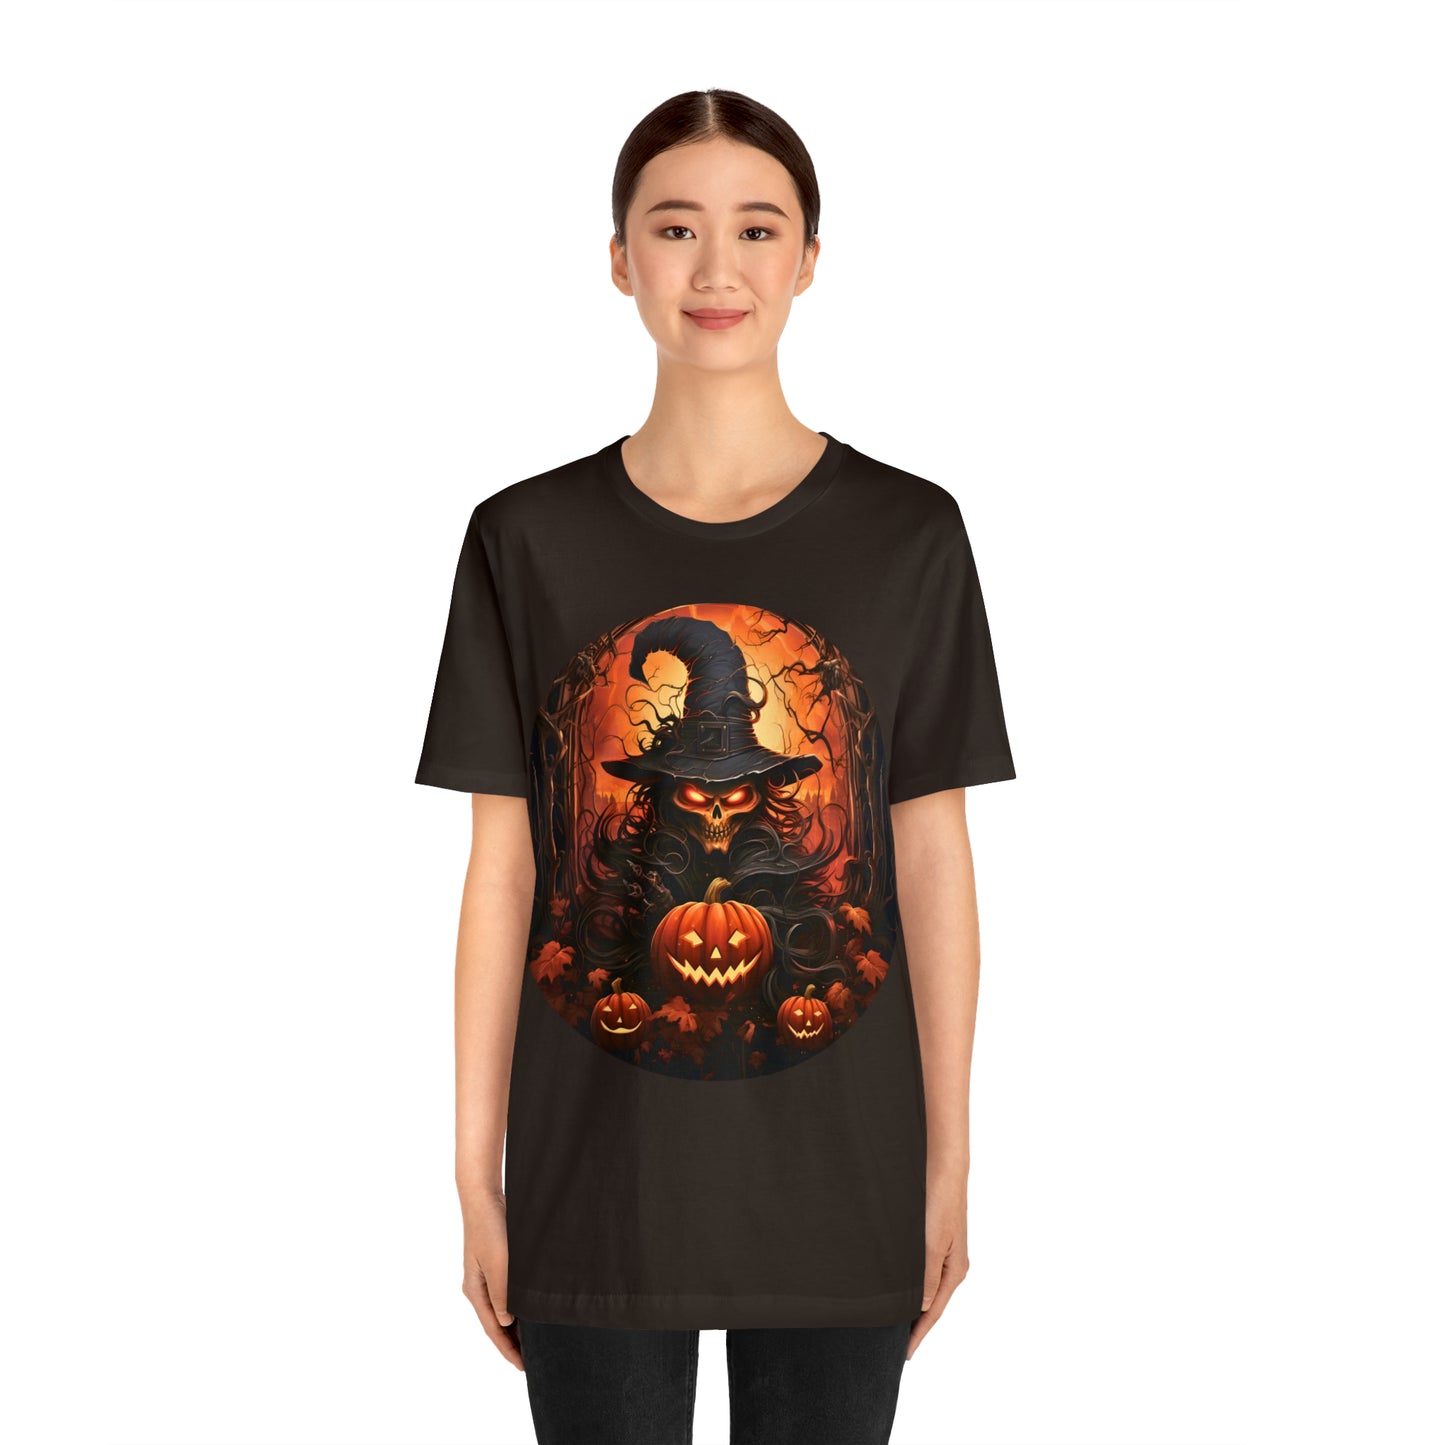 Spooky Jack O Lantern Pumpkin Face Shirt Pumpkin Face Halloween Costume Scary Faces, Pumpkin Silhouette, Vintage Shirt Halloween Shirt